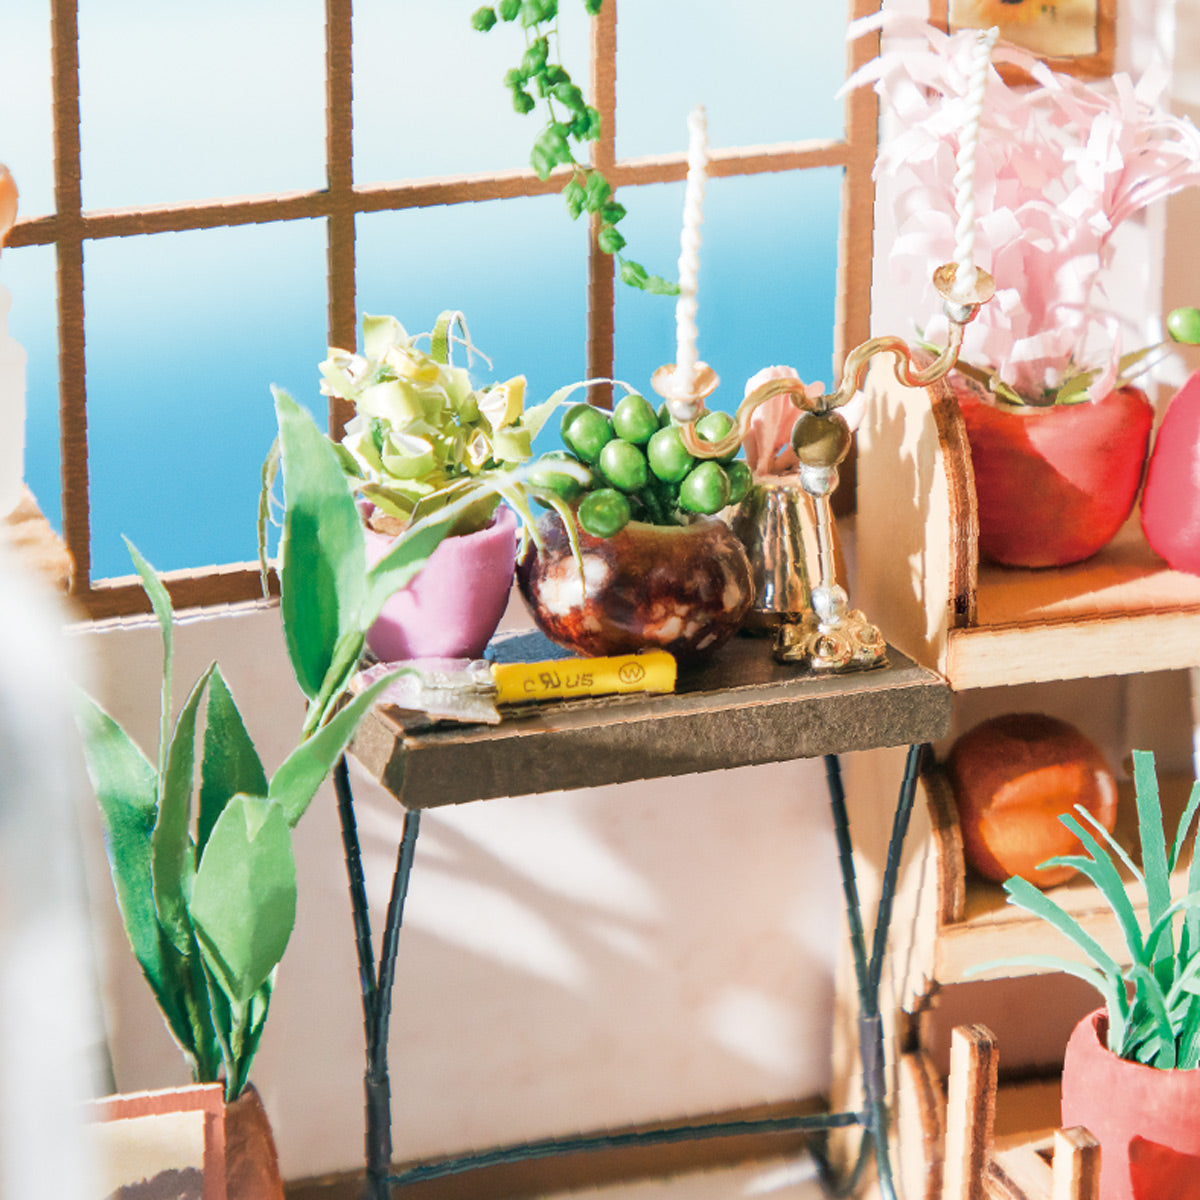 Miniature House - Emily's Flower Shop